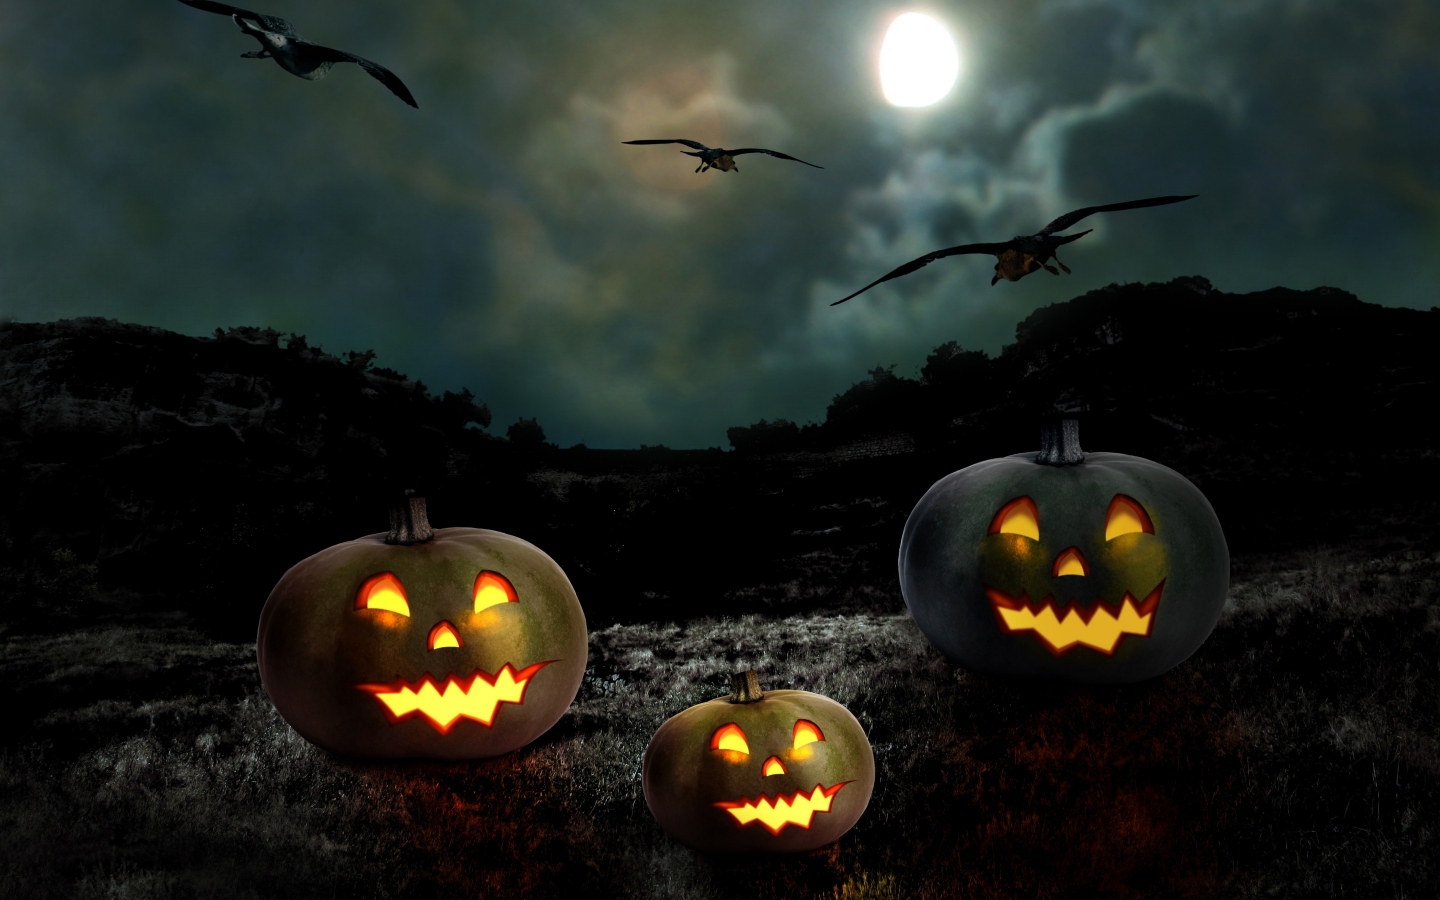 Halloween Pumpkin Smile for 1440 x 900 widescreen resolution